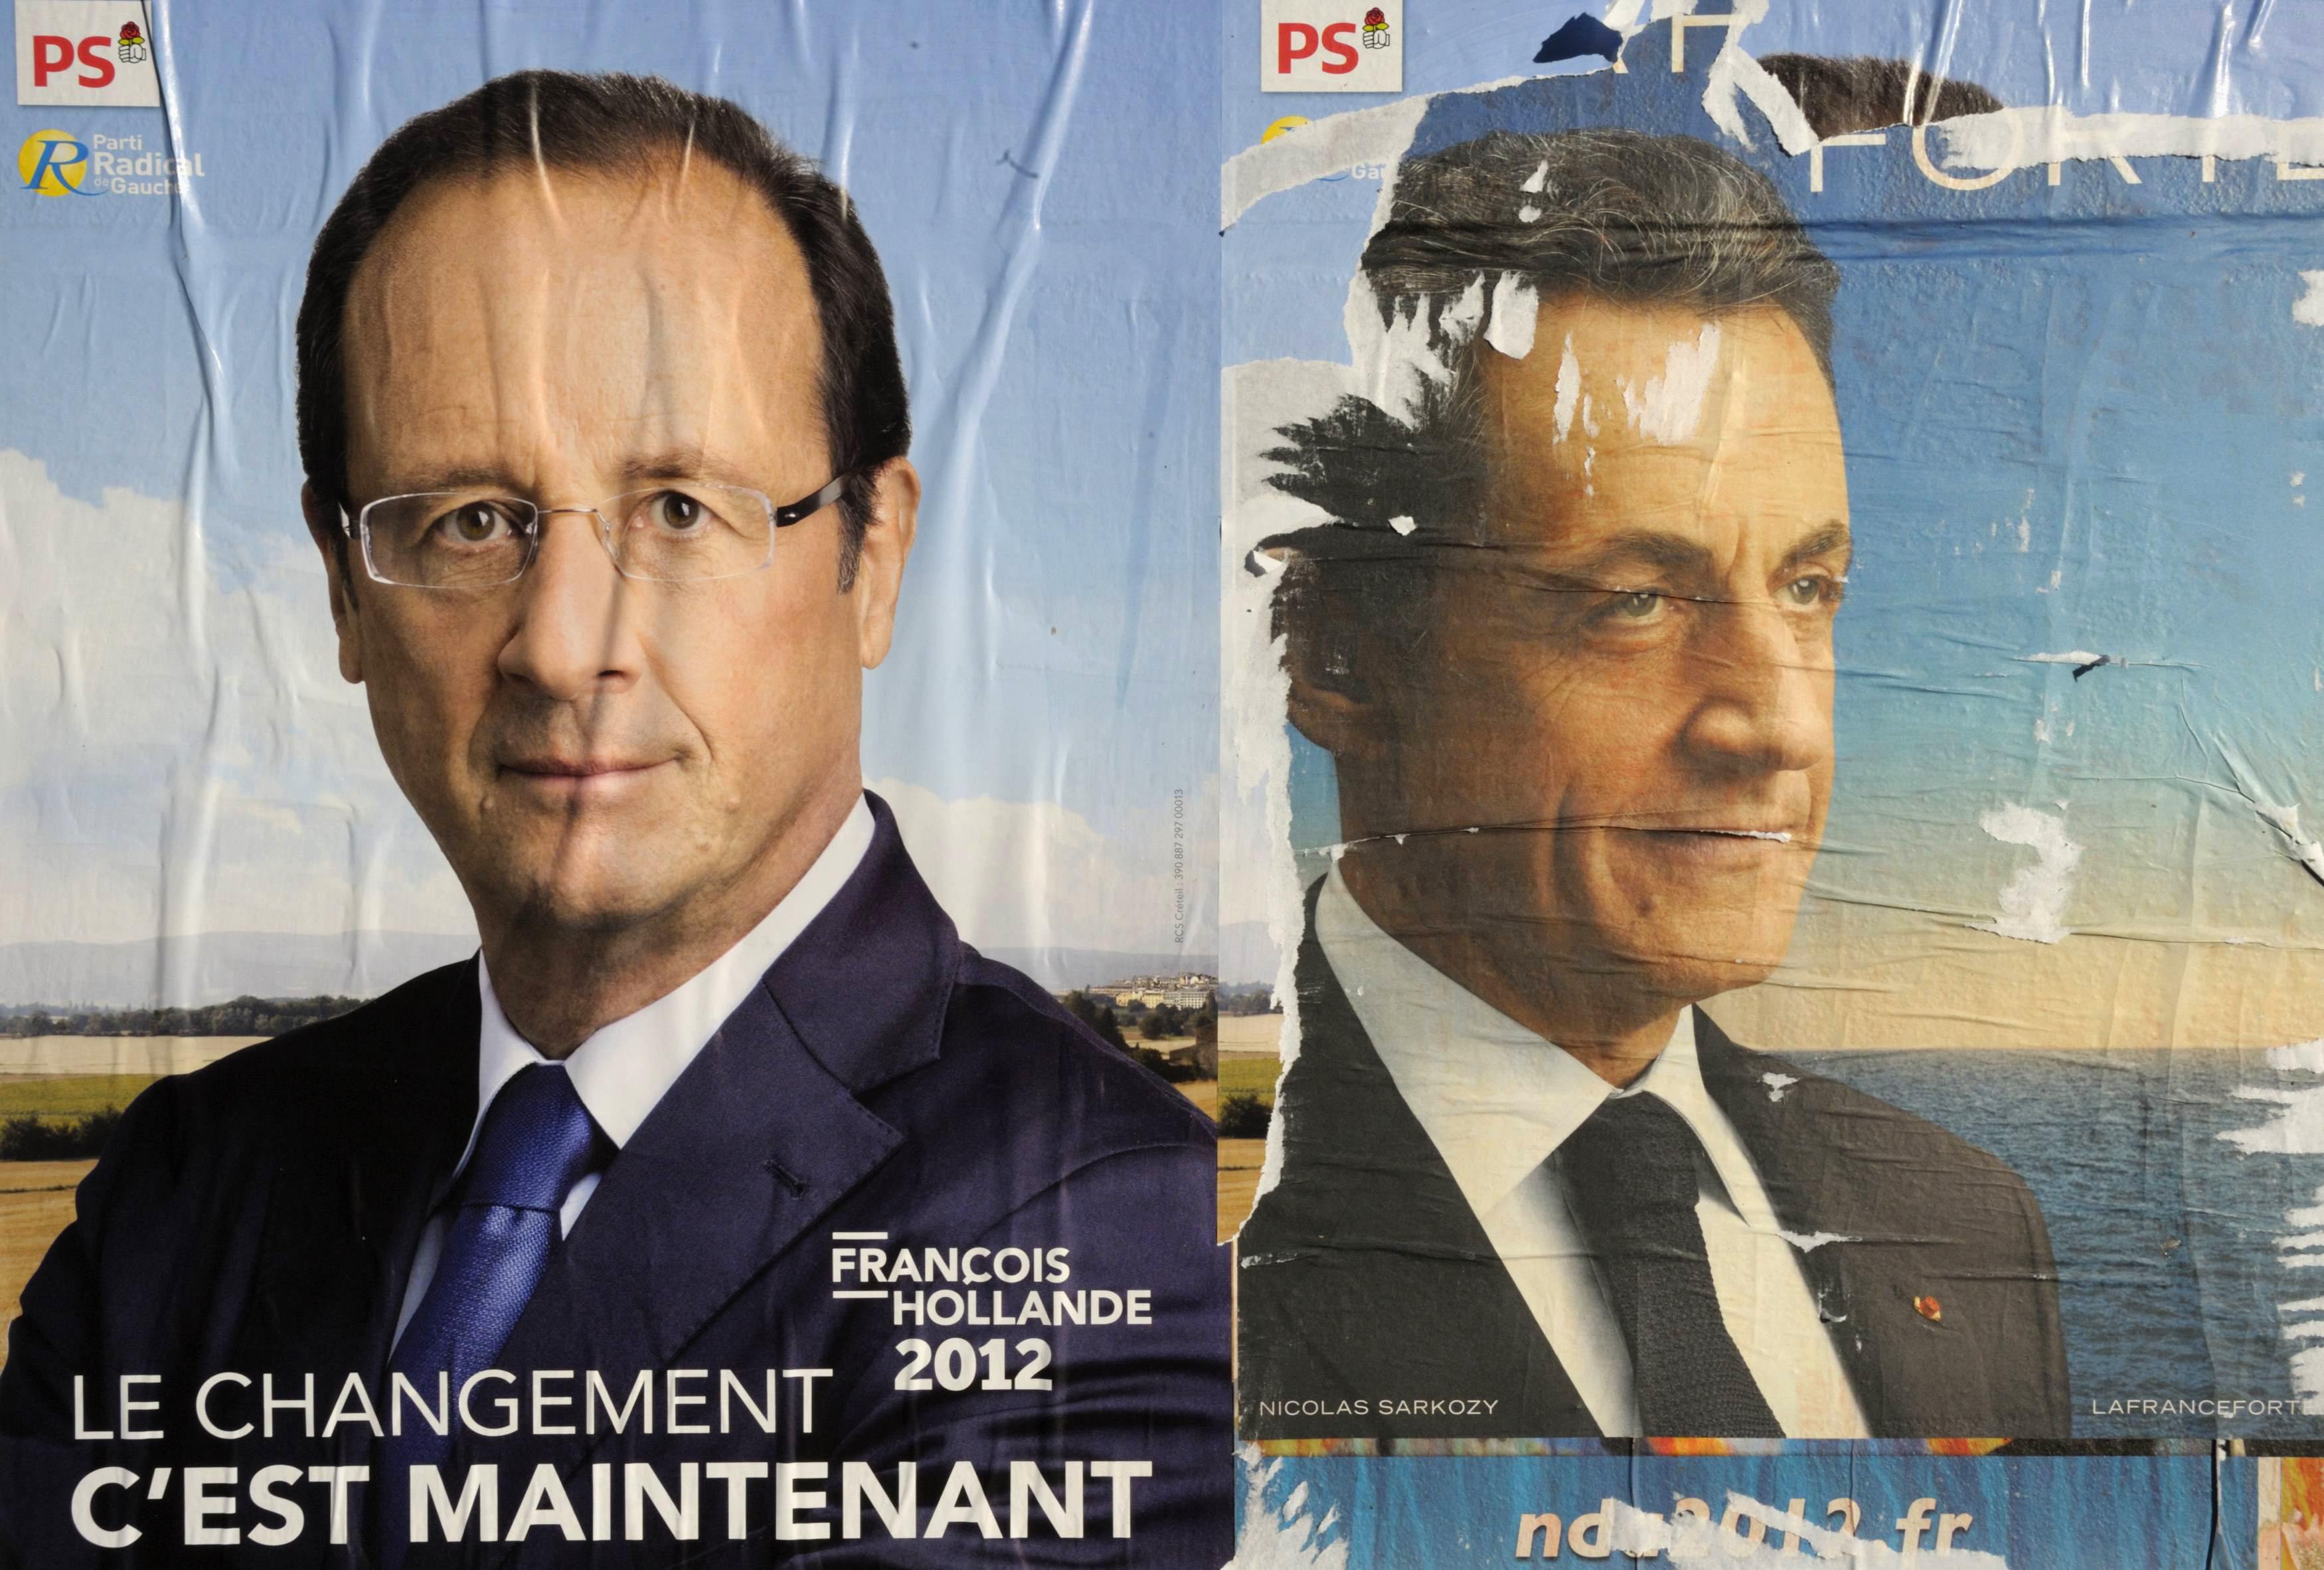 Γιατί είναι καθοριστικής σημασίας ο Α’ γύρος των γαλλικών εκλογών